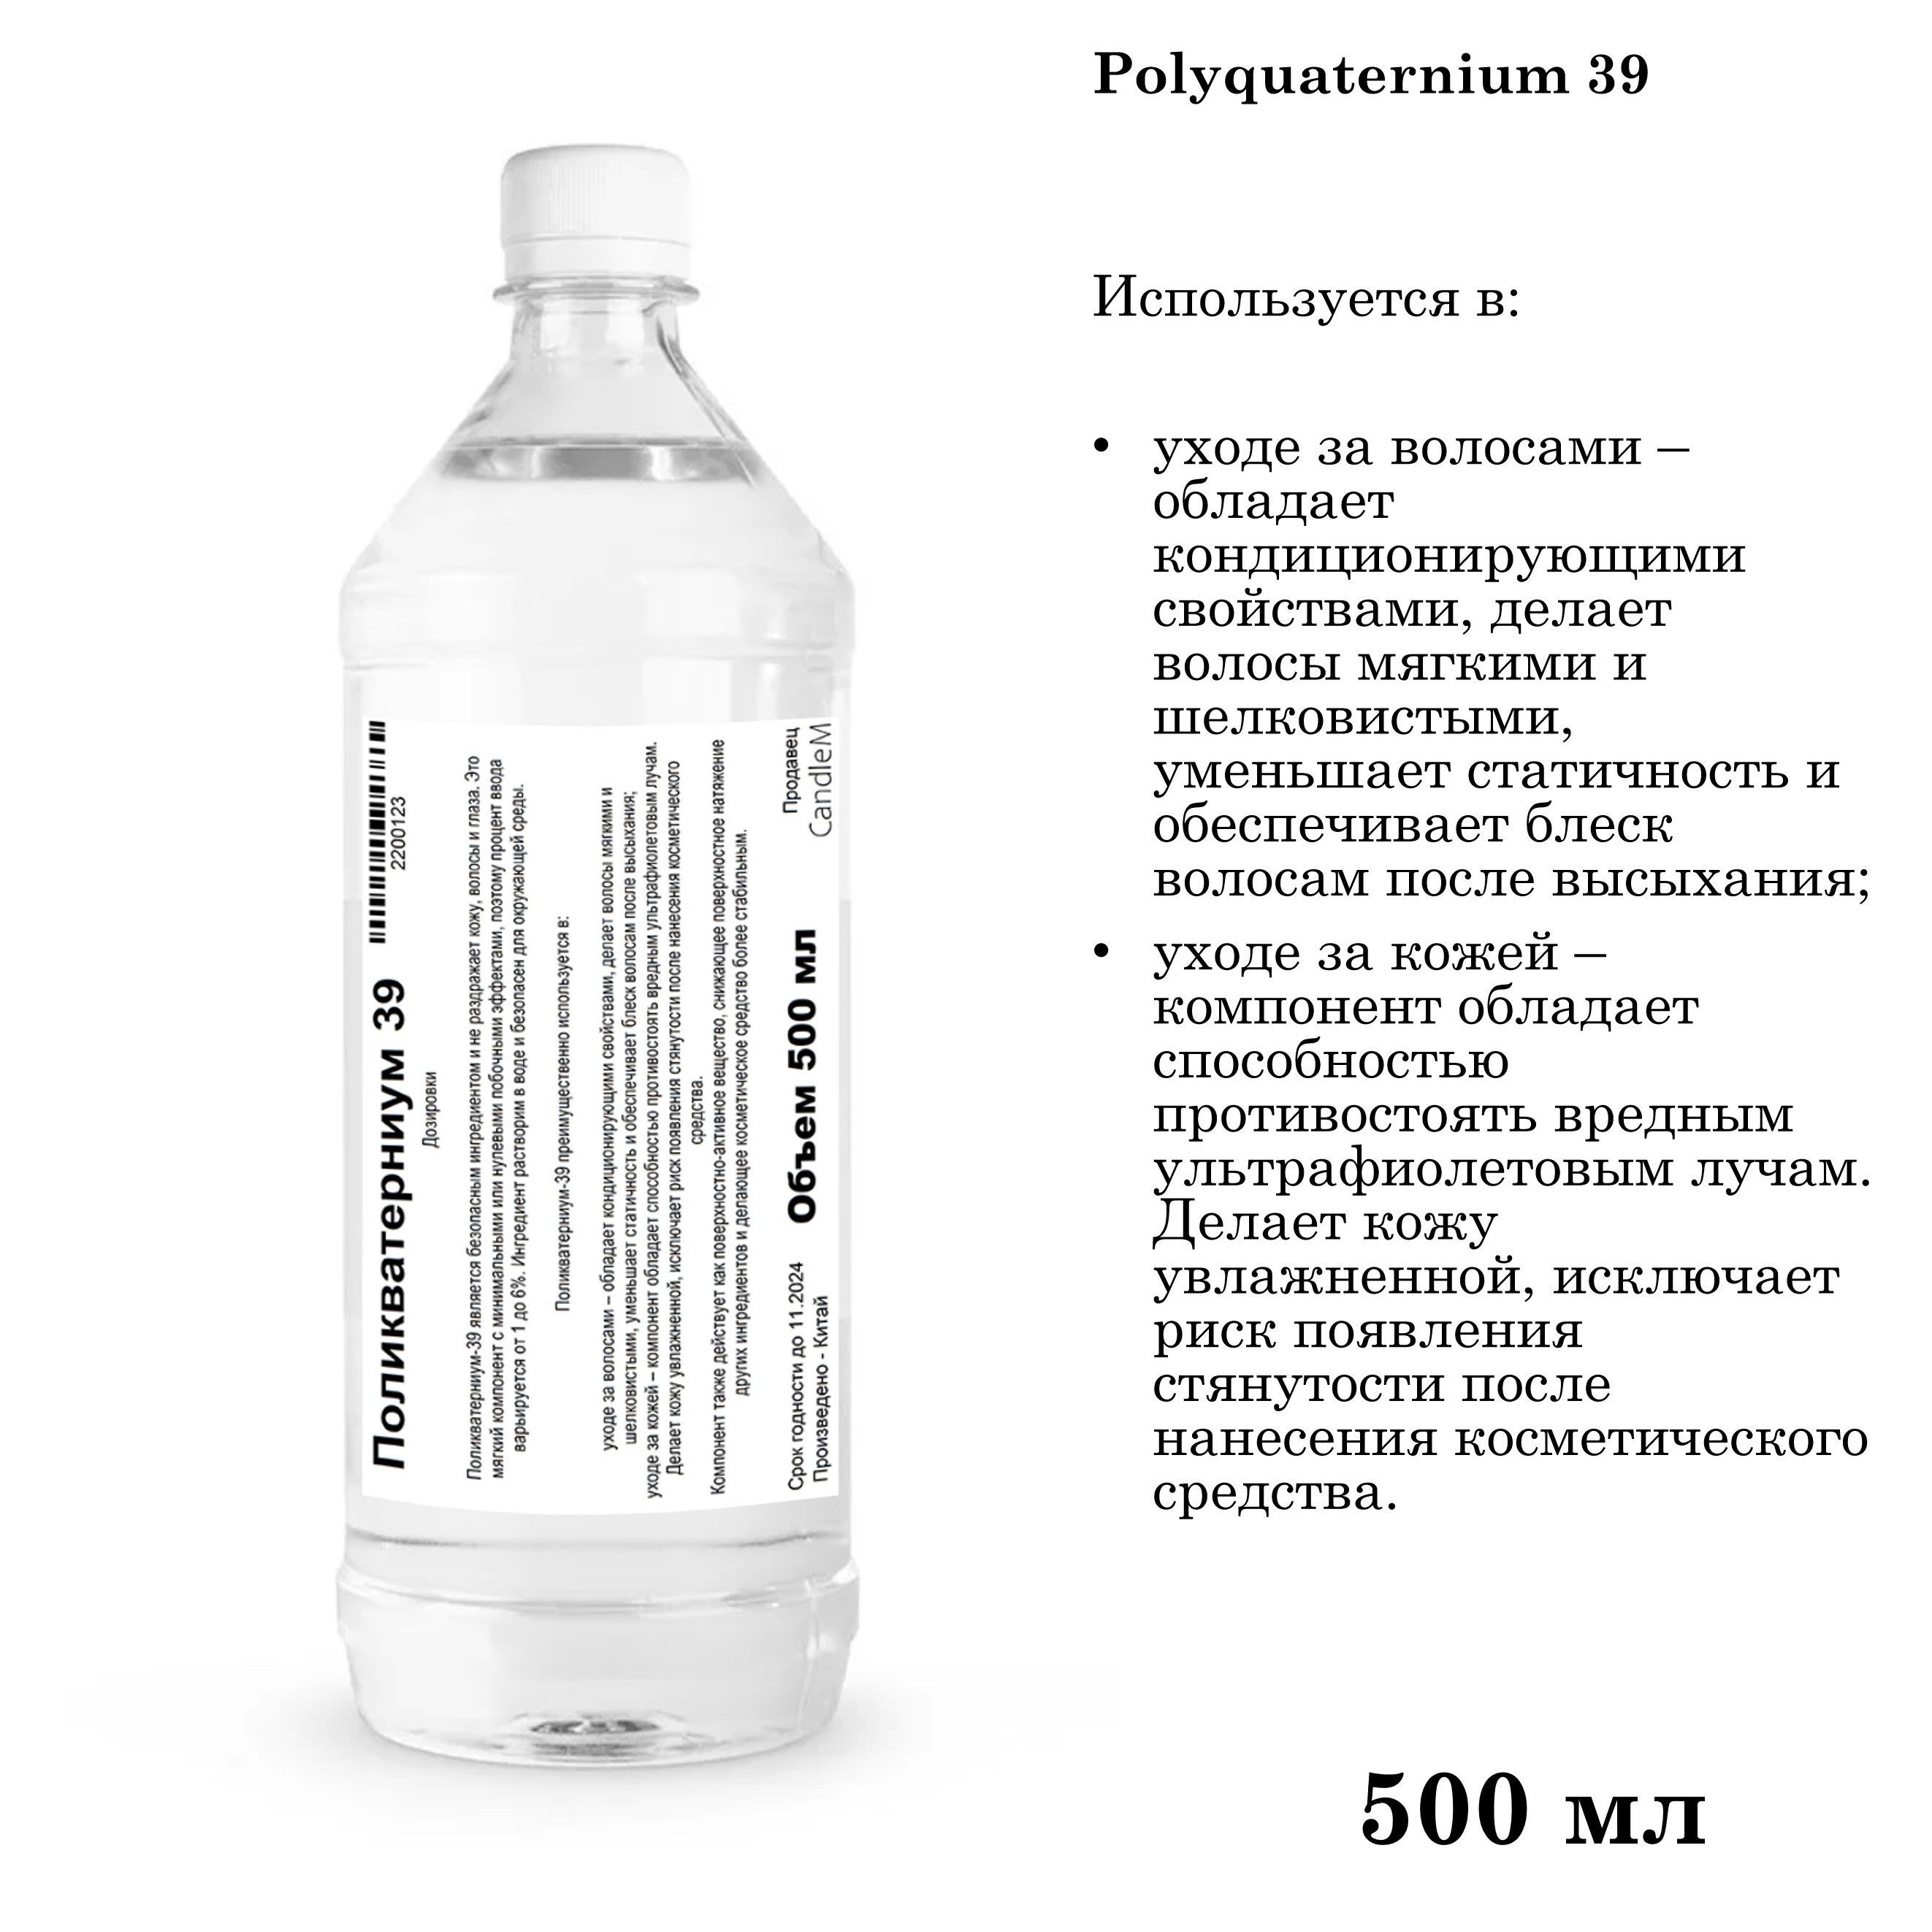 Поликватерниум 7 как использовать. ЭДТА динатриевая соль, поликватерниум-10, парфюмерная композиция. Поликватерниум-10 в косметике для волос.